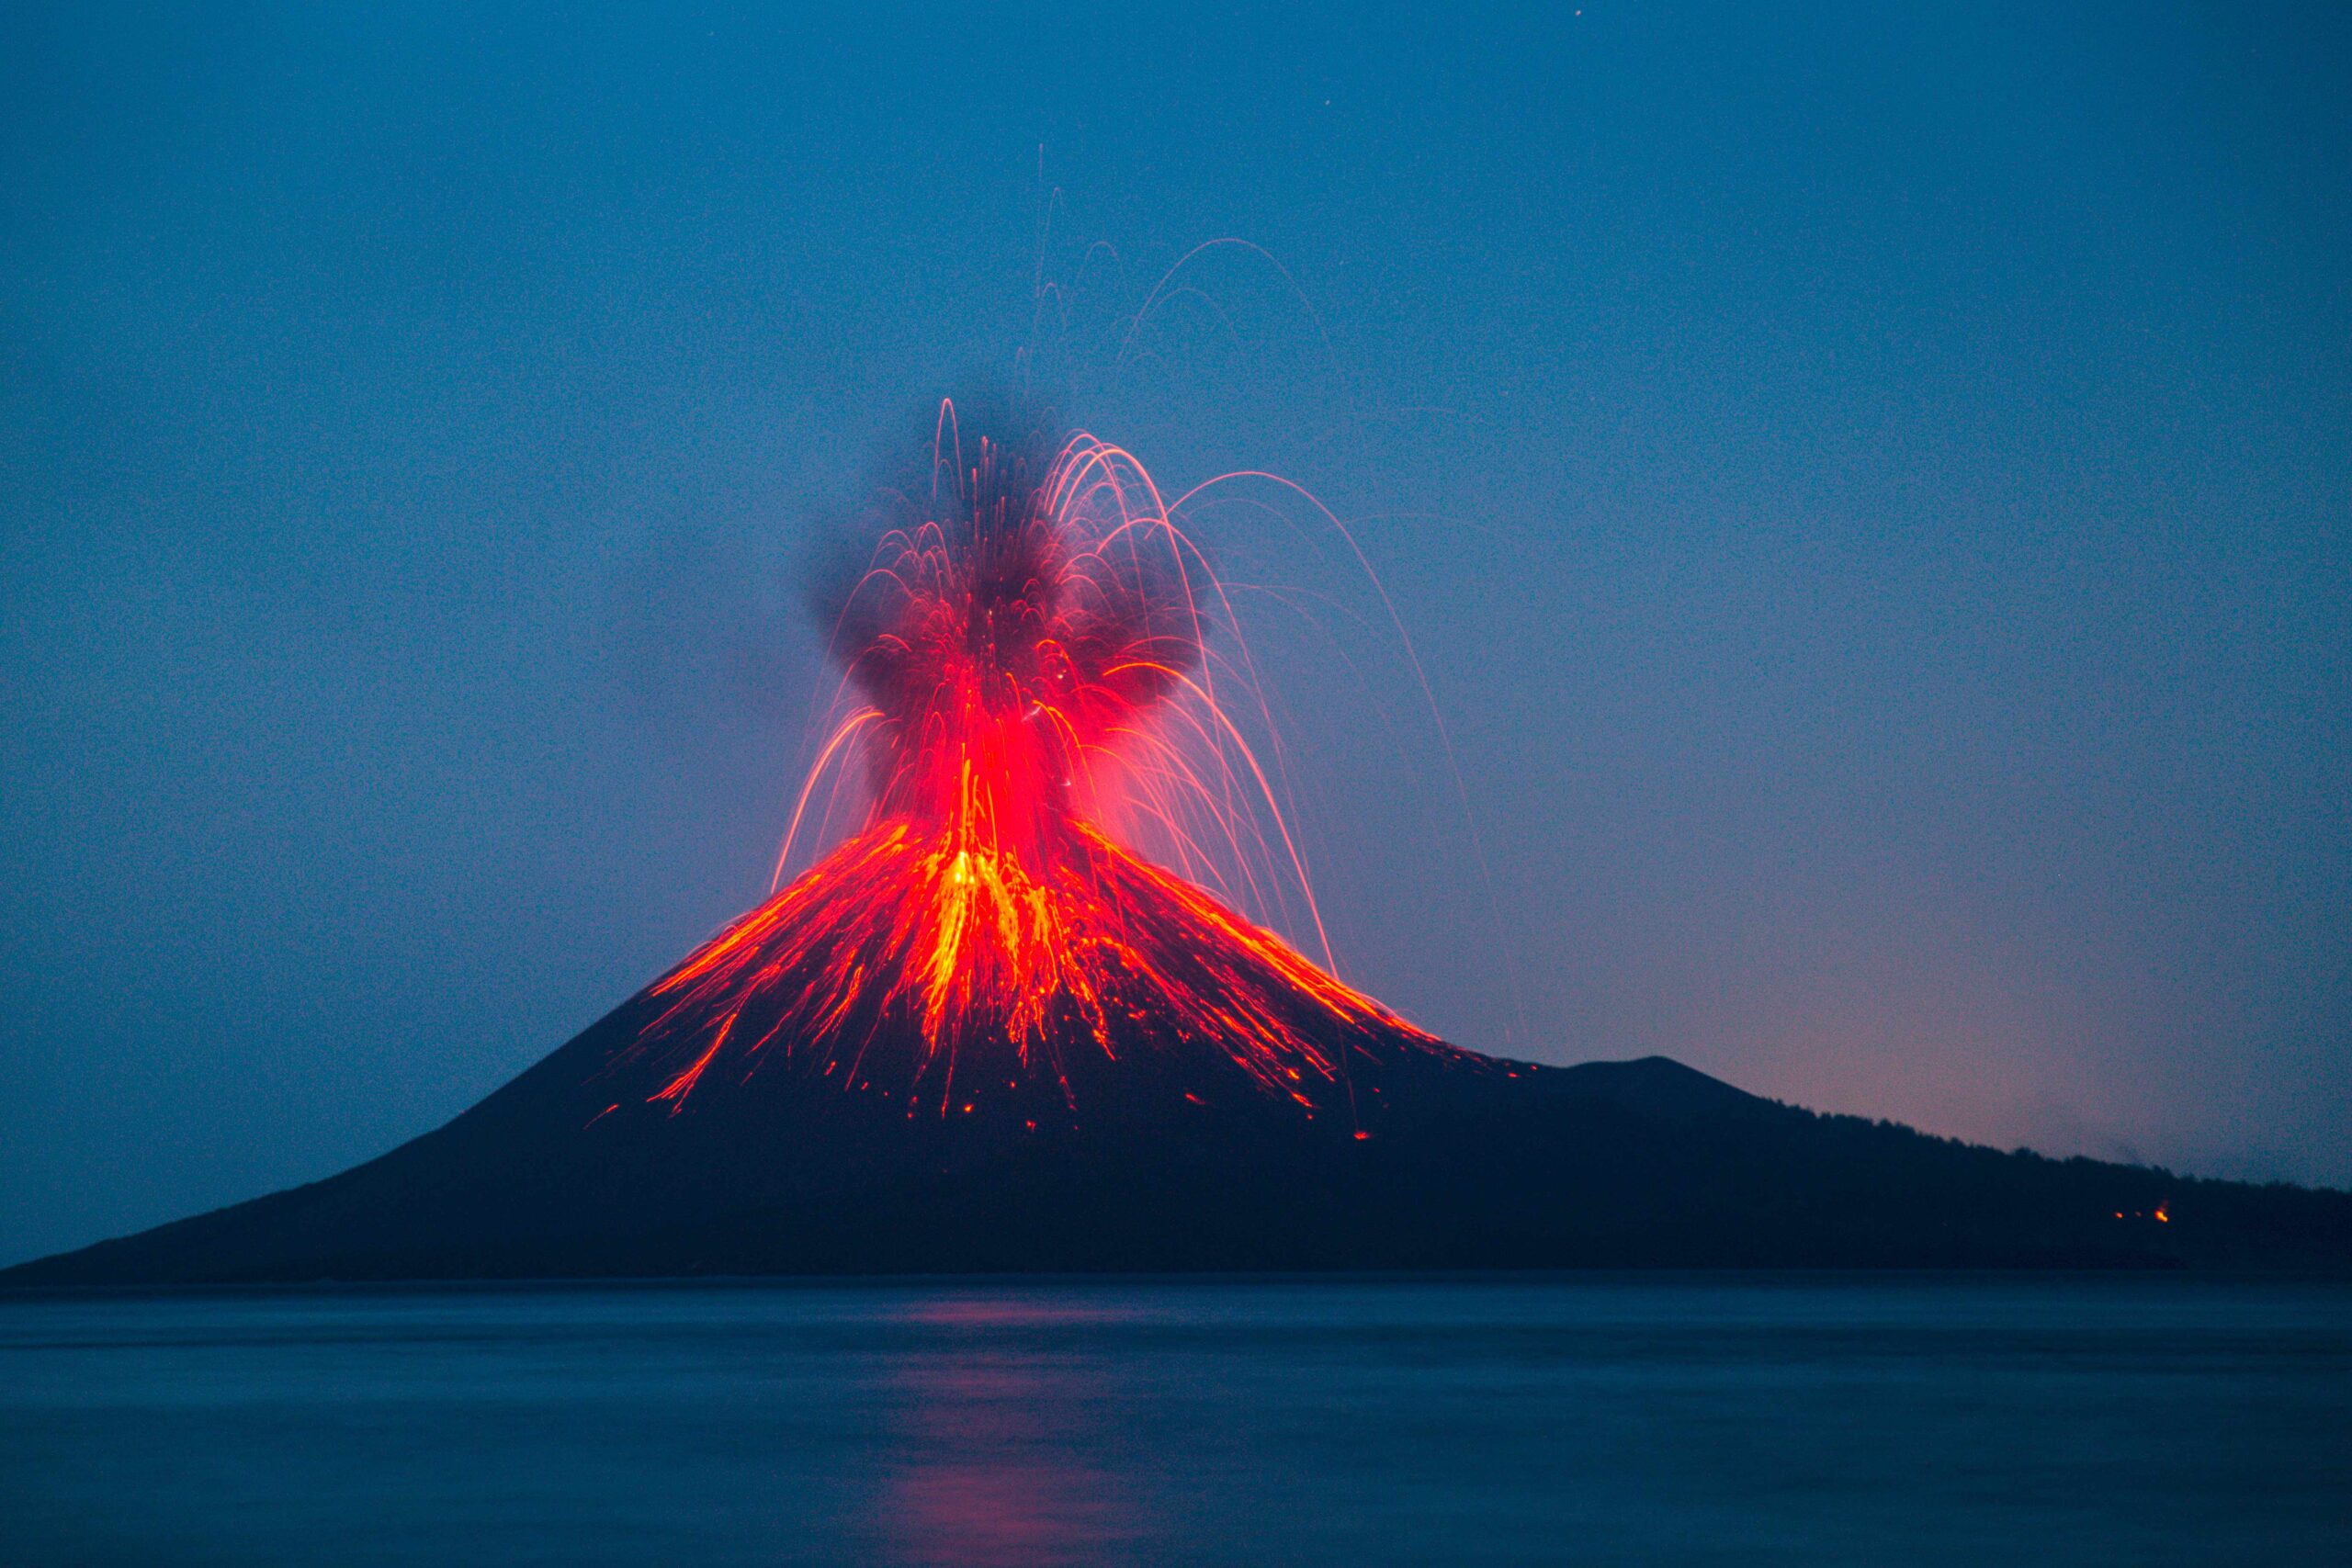 Le monde doit se préparer à une éruption volcanique destructrice de grande ampleur